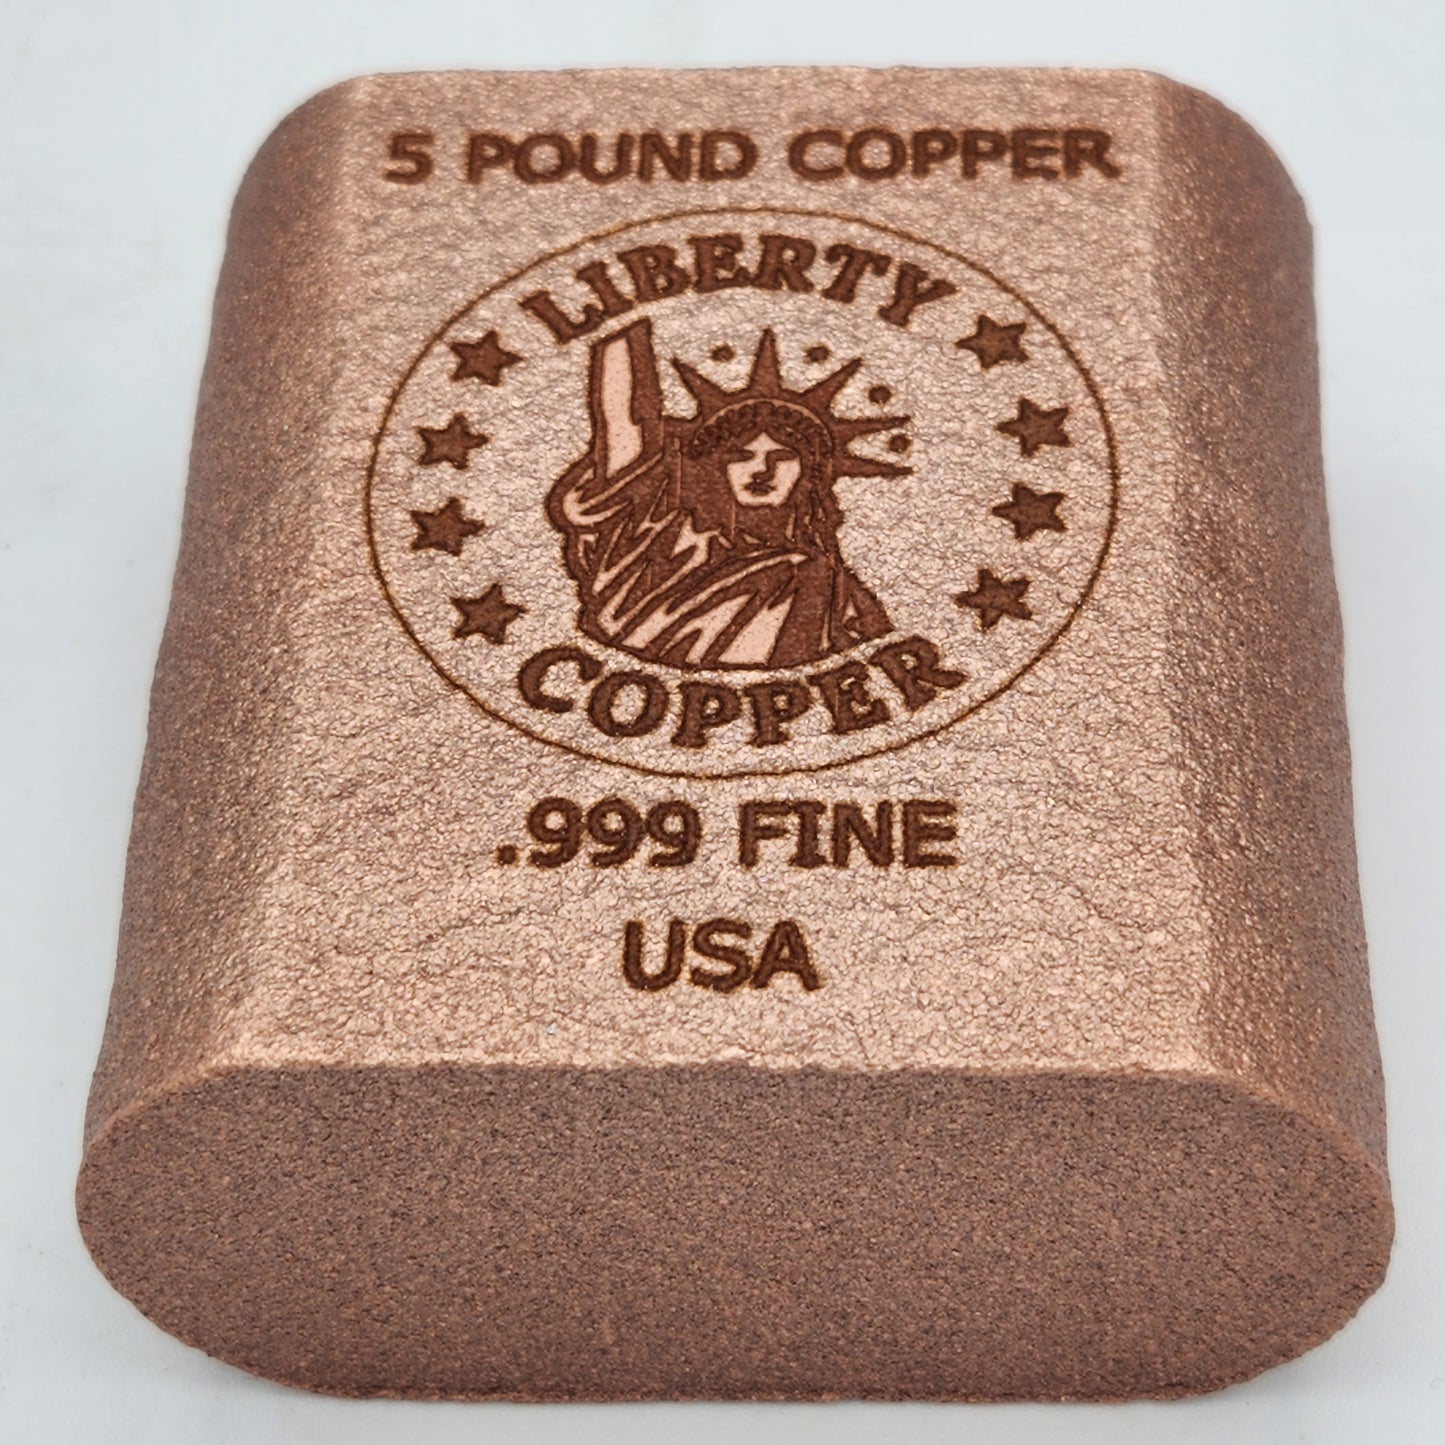 Collectable 5 pound .999 Fine Copper Bullion Bar